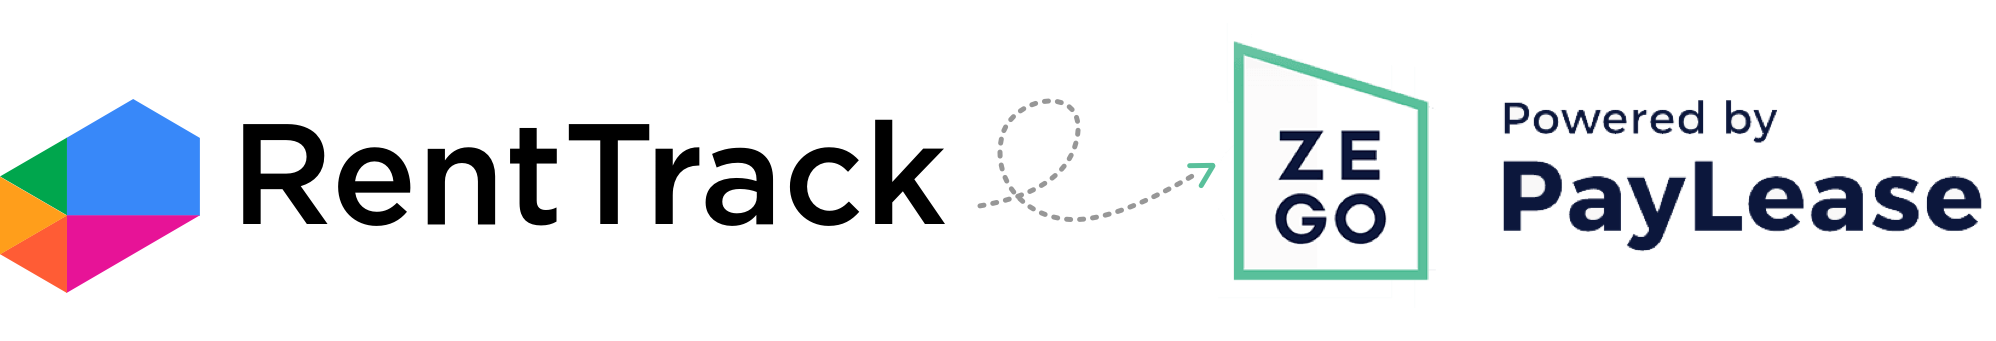 zego-partner-logo-2